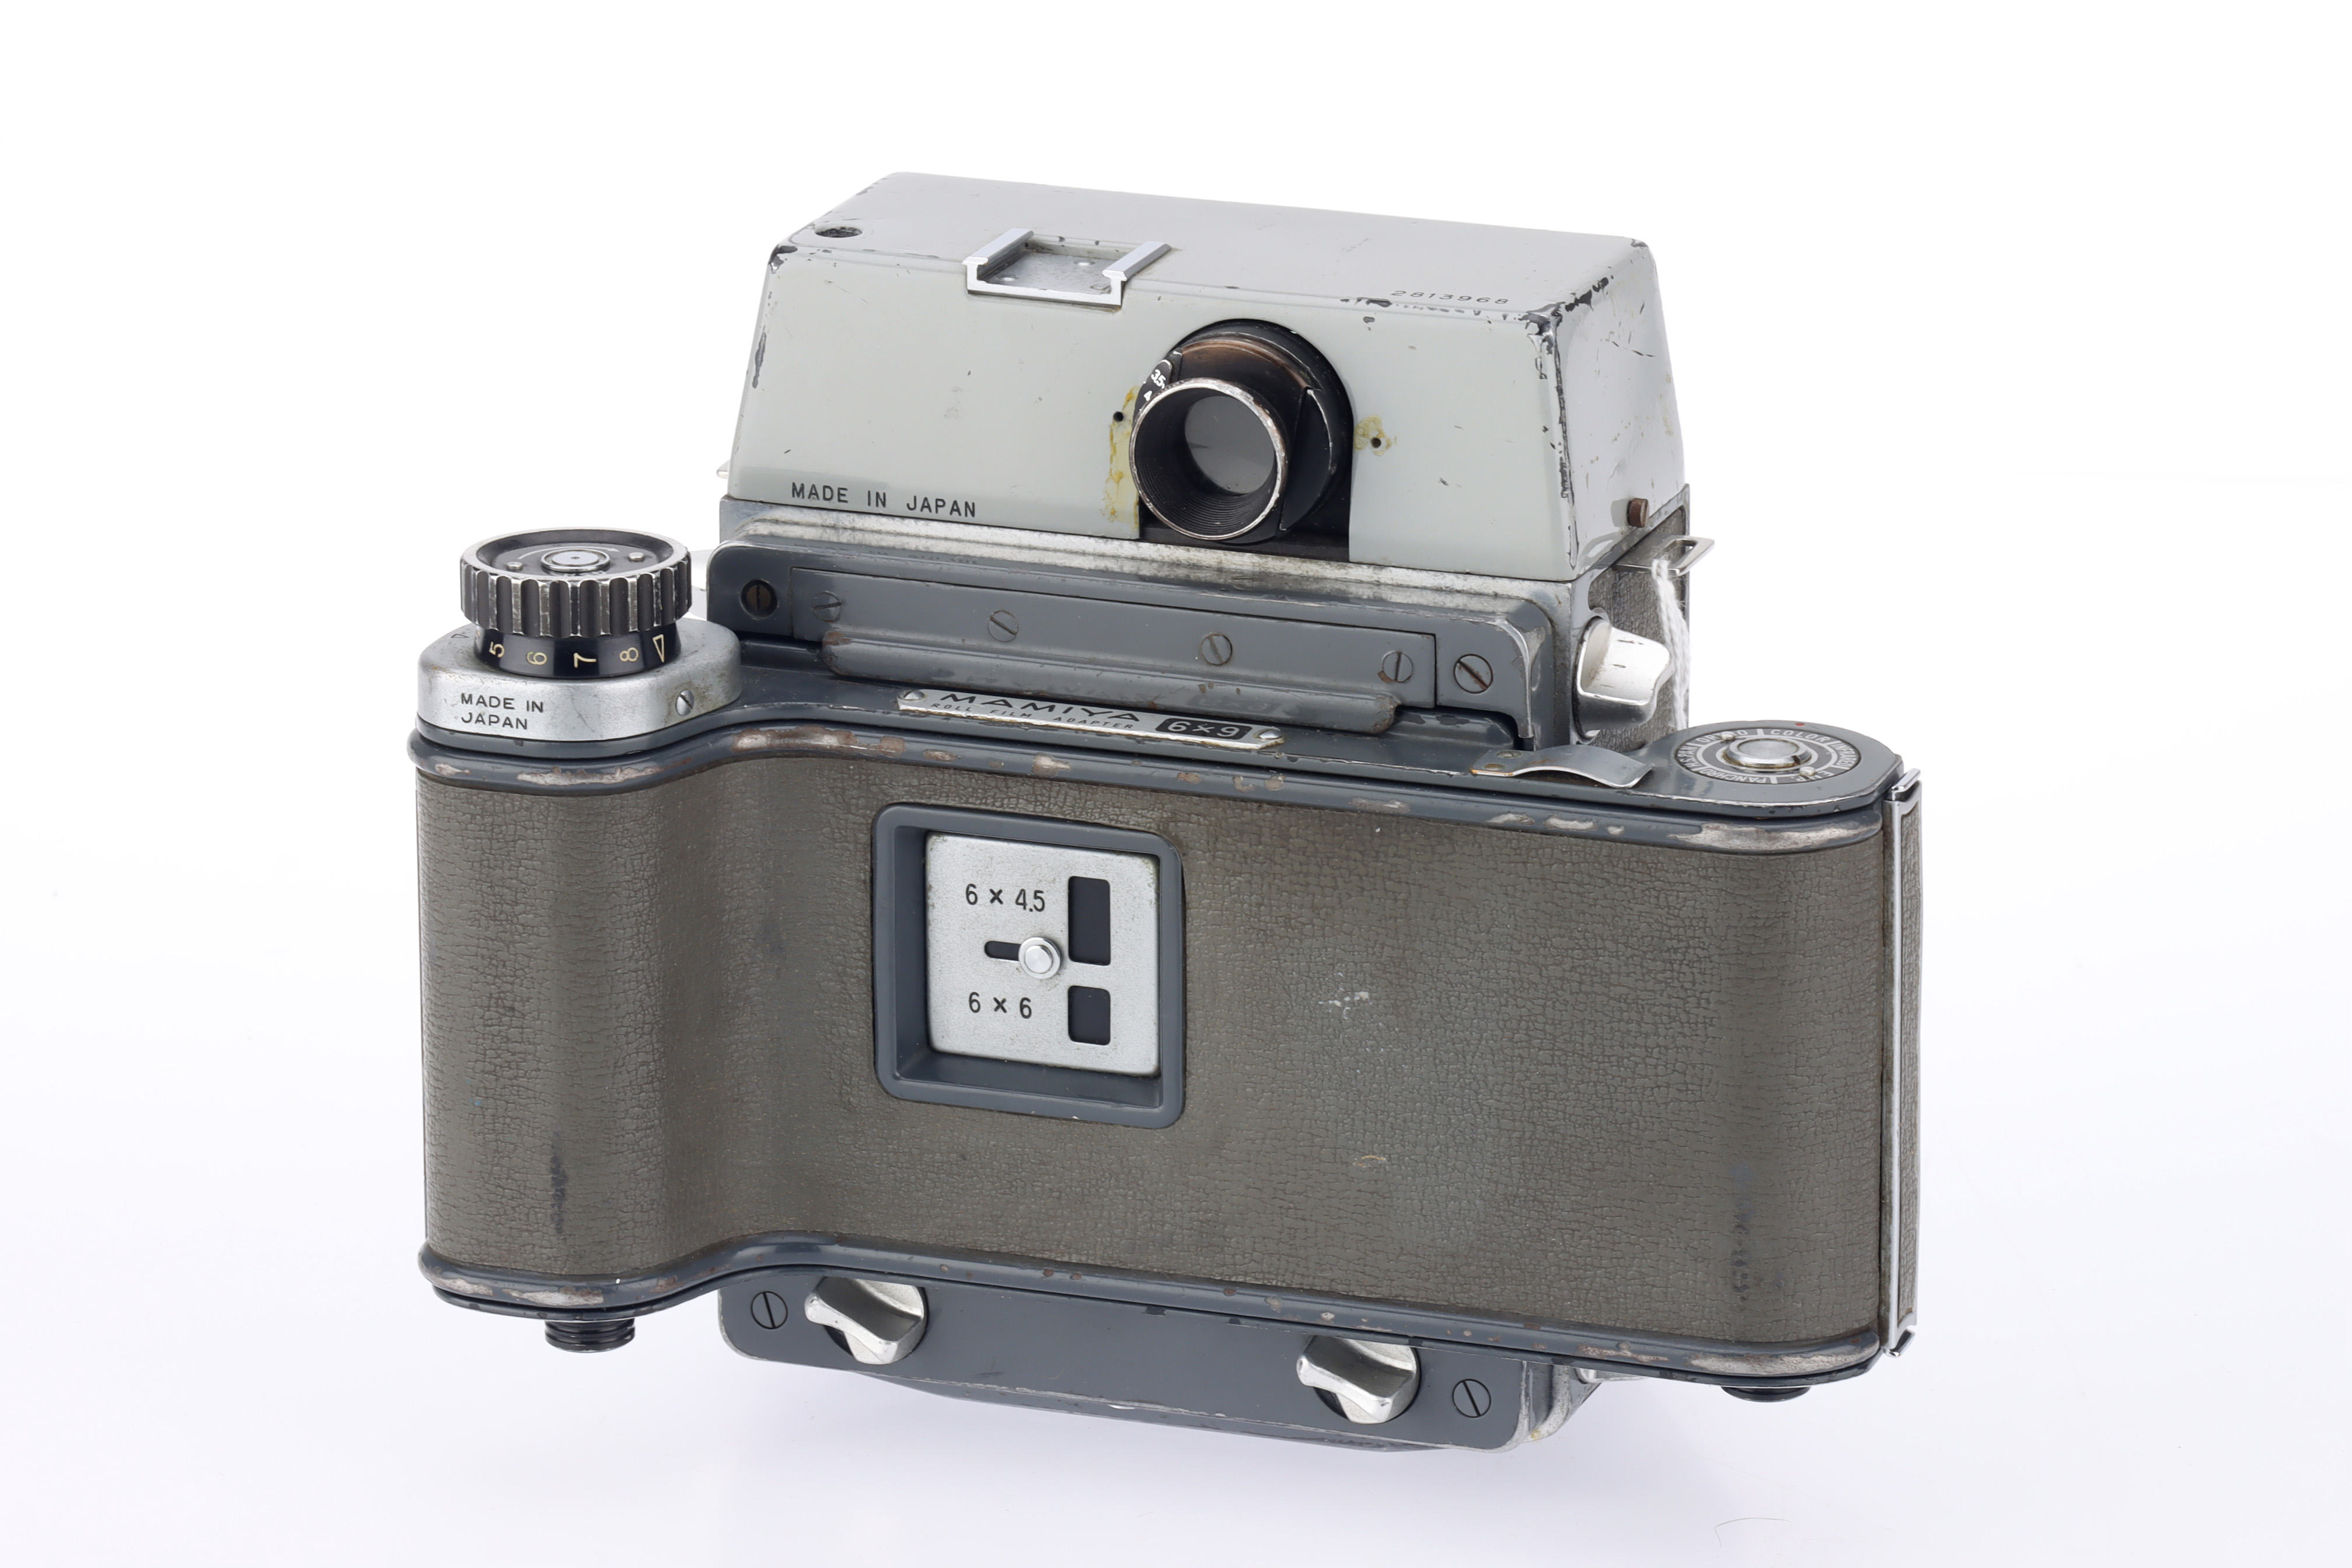 A Mamiya 23 Press Rangefinder Camera - Image 2 of 3